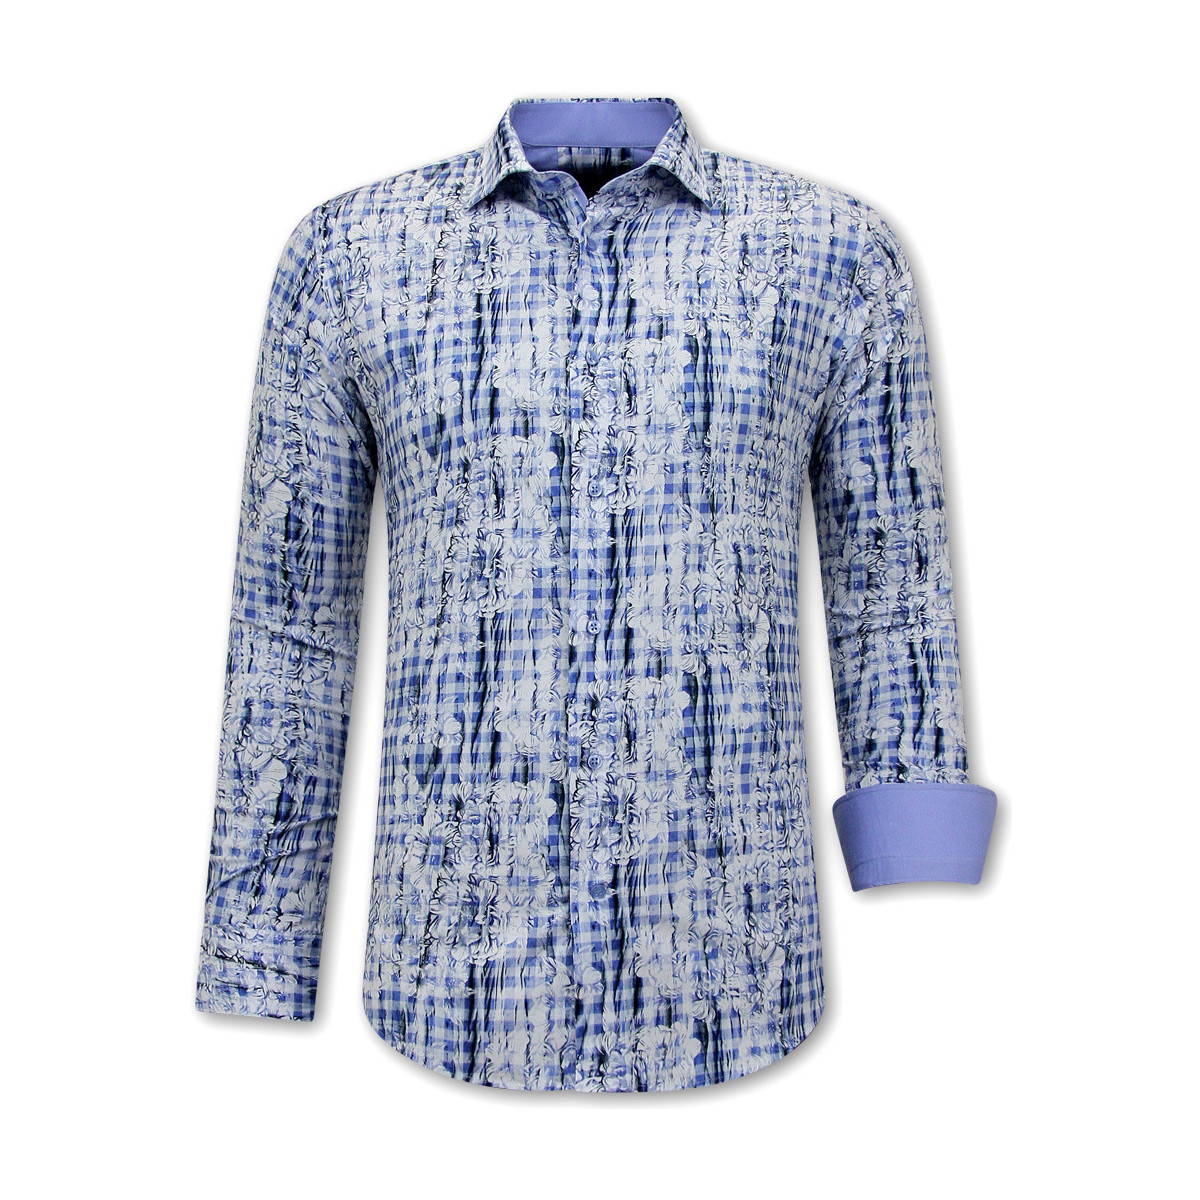 Vêtements Homme Chemises manches longues Gentile Bellini 140085389 Bleu